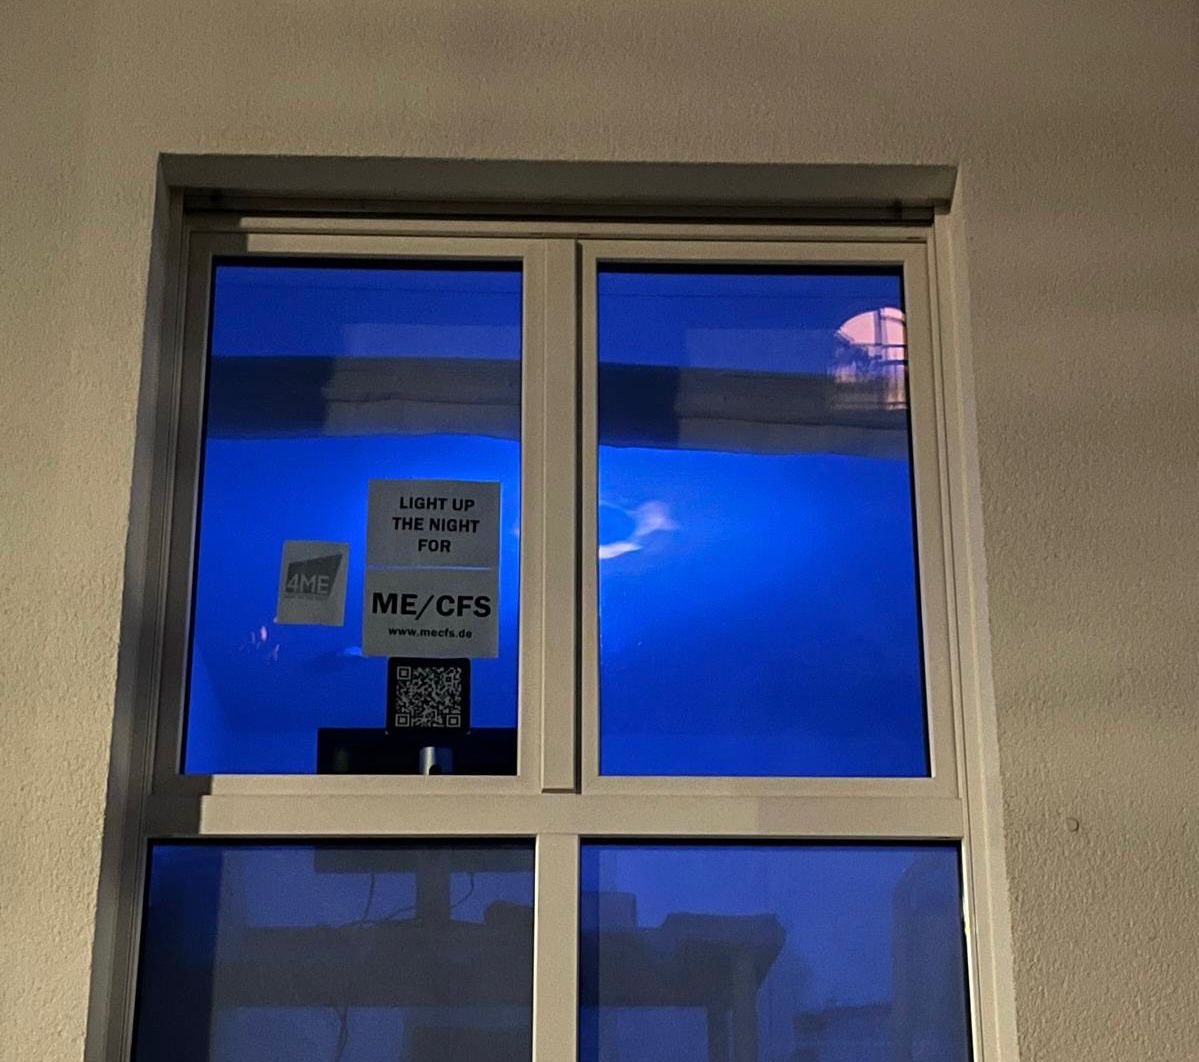 Am #MEAwarenessDay leuchtet mein Fenster in blau - für mehr Sichtbarkeit für #MECFS-Patienten.

#Lightupthenight4ME